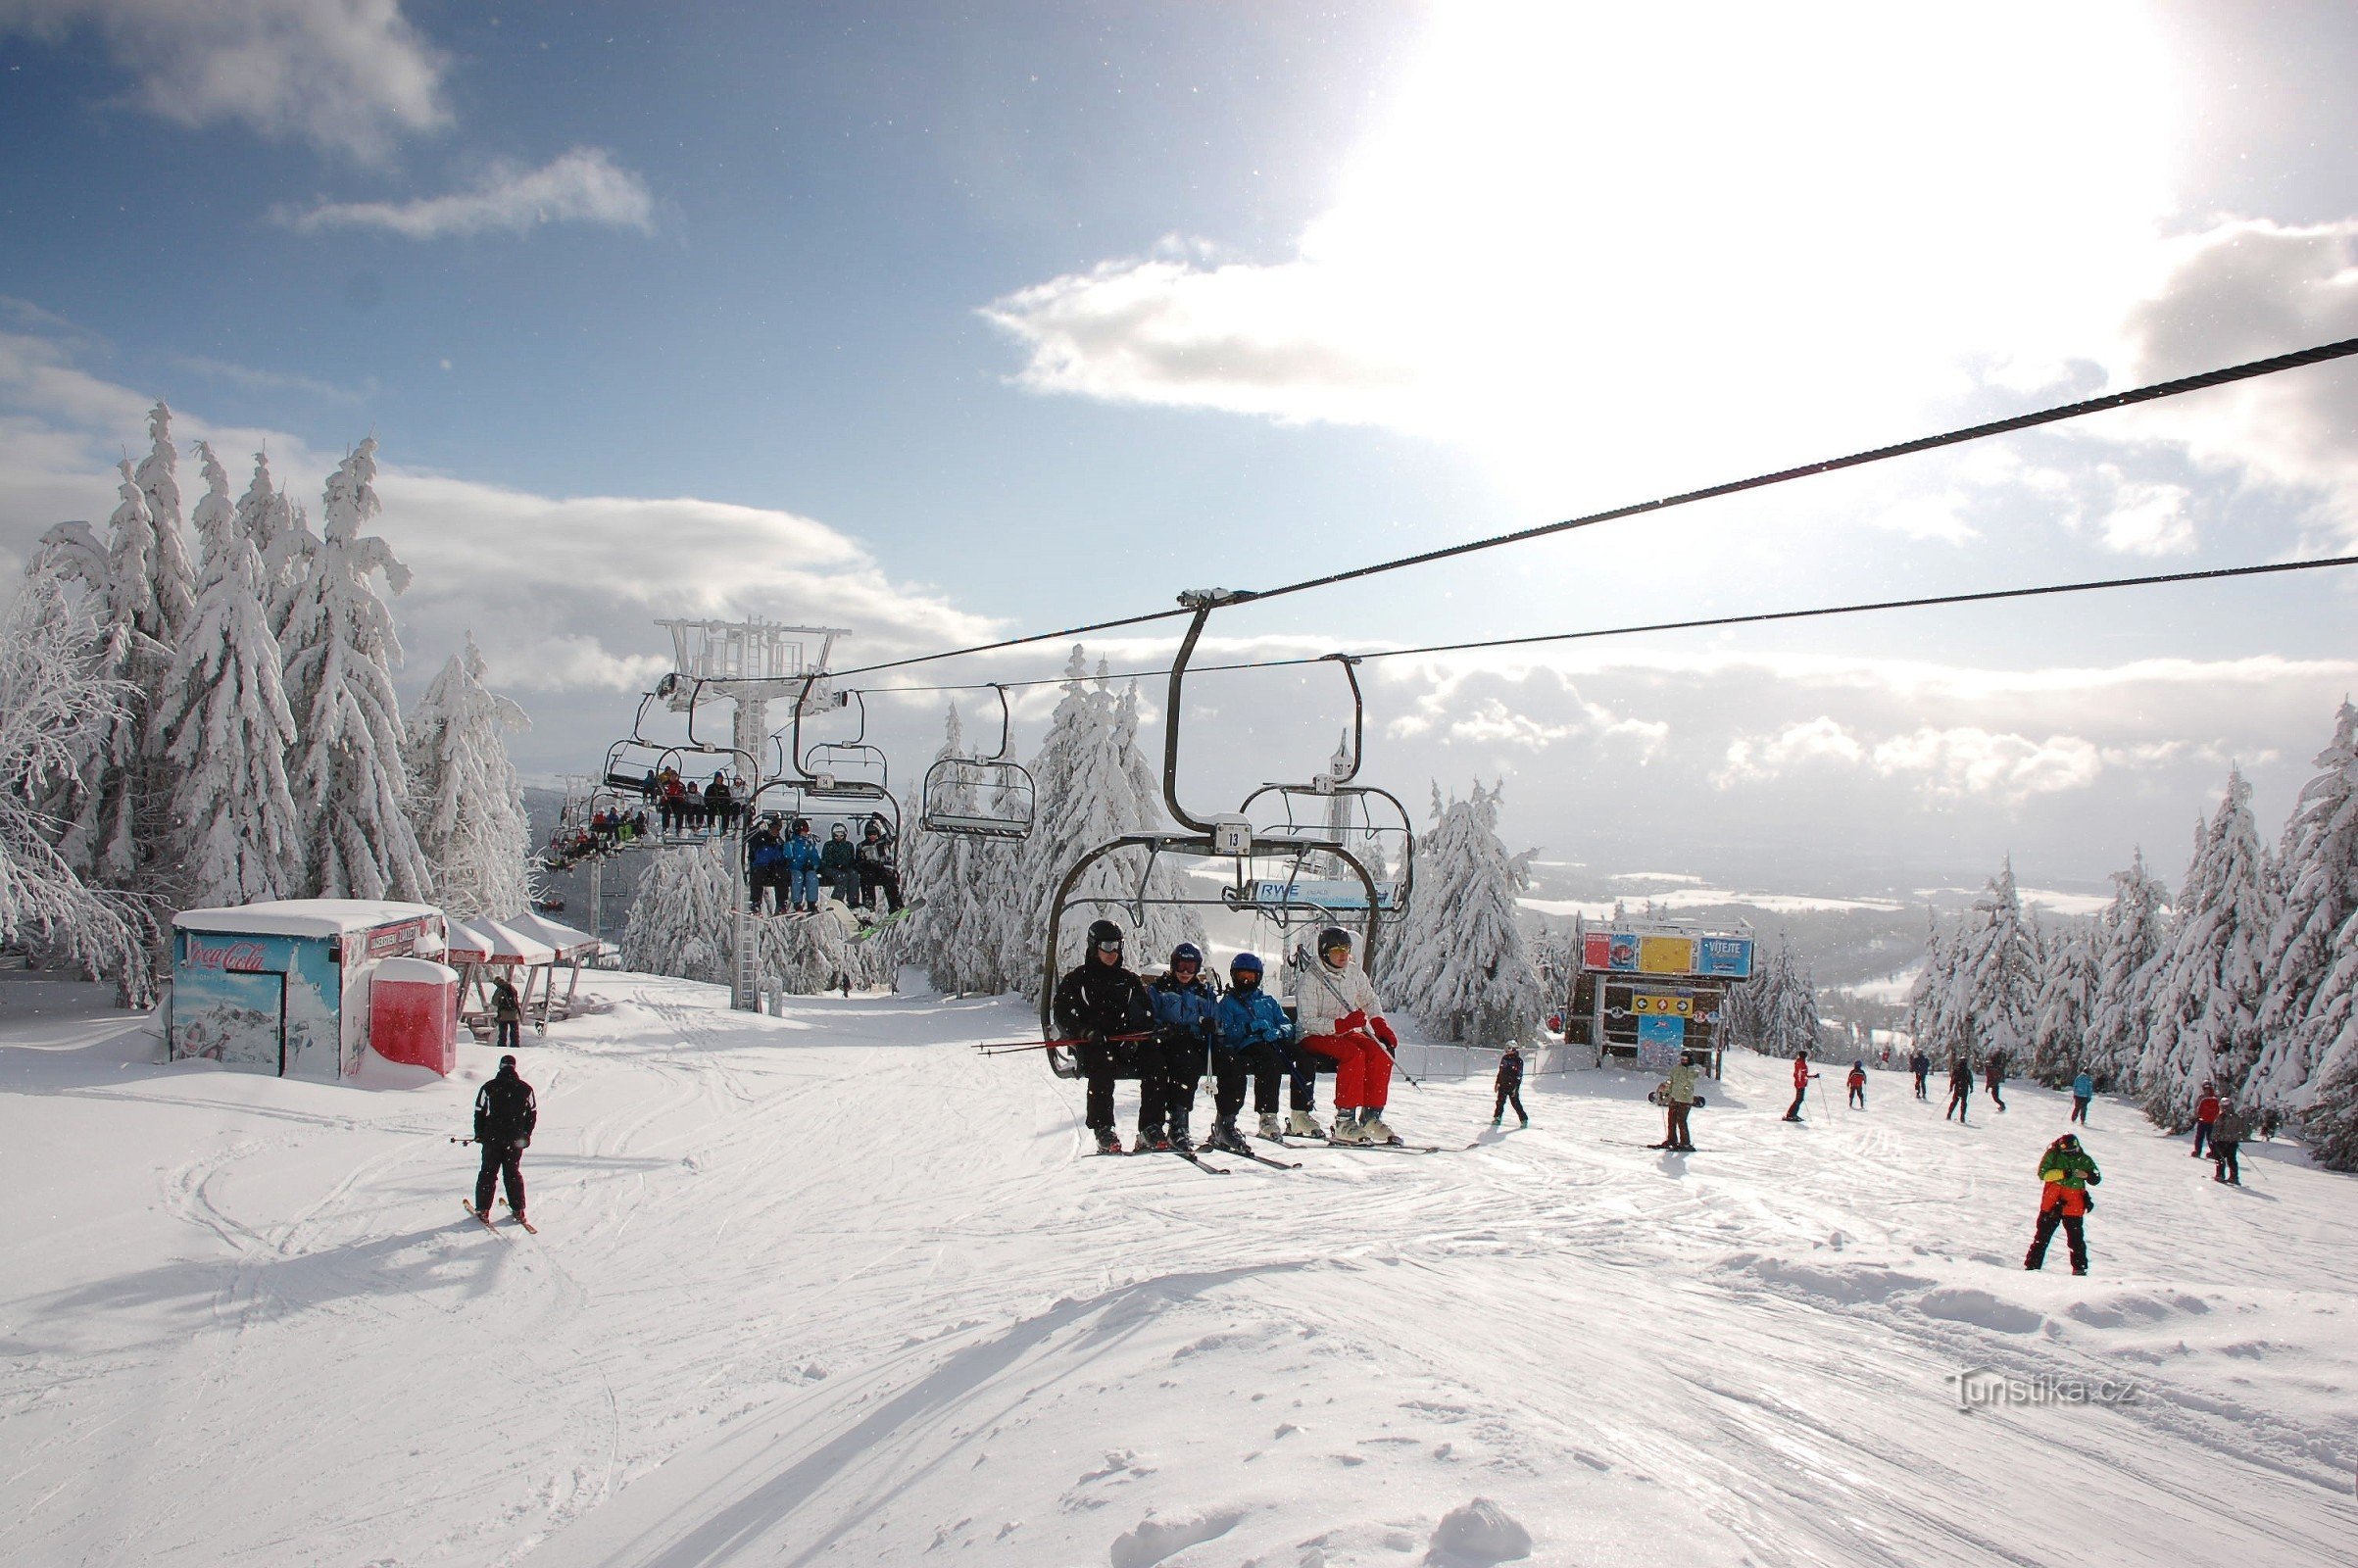 Skicentrum Říčky - een modern skigebied in het hart van het Adelaarsgebergte